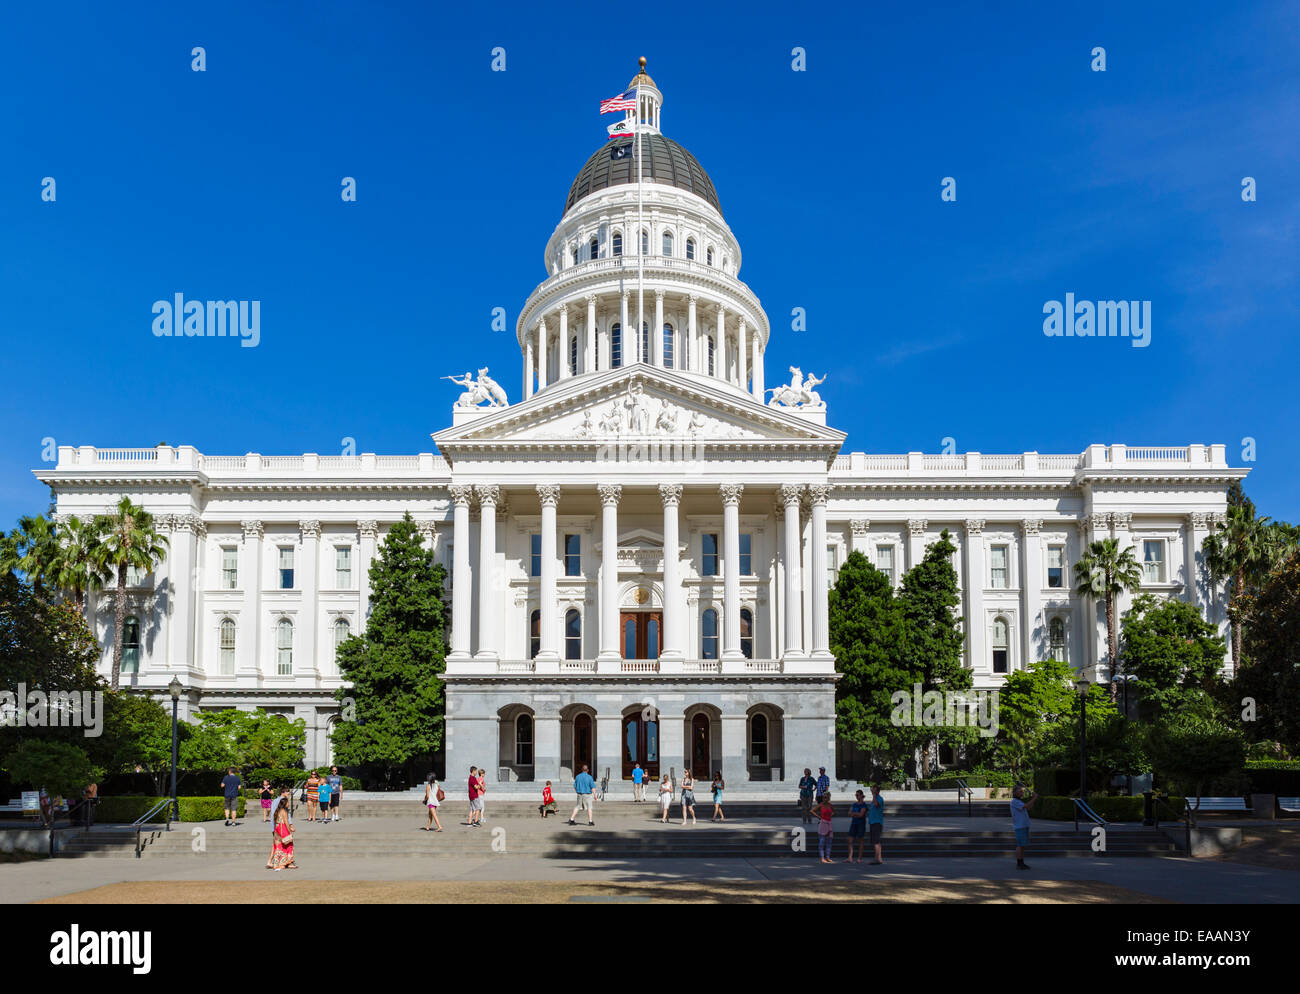 California State Capitol, Sacramento, Californie, USA Banque D'Images